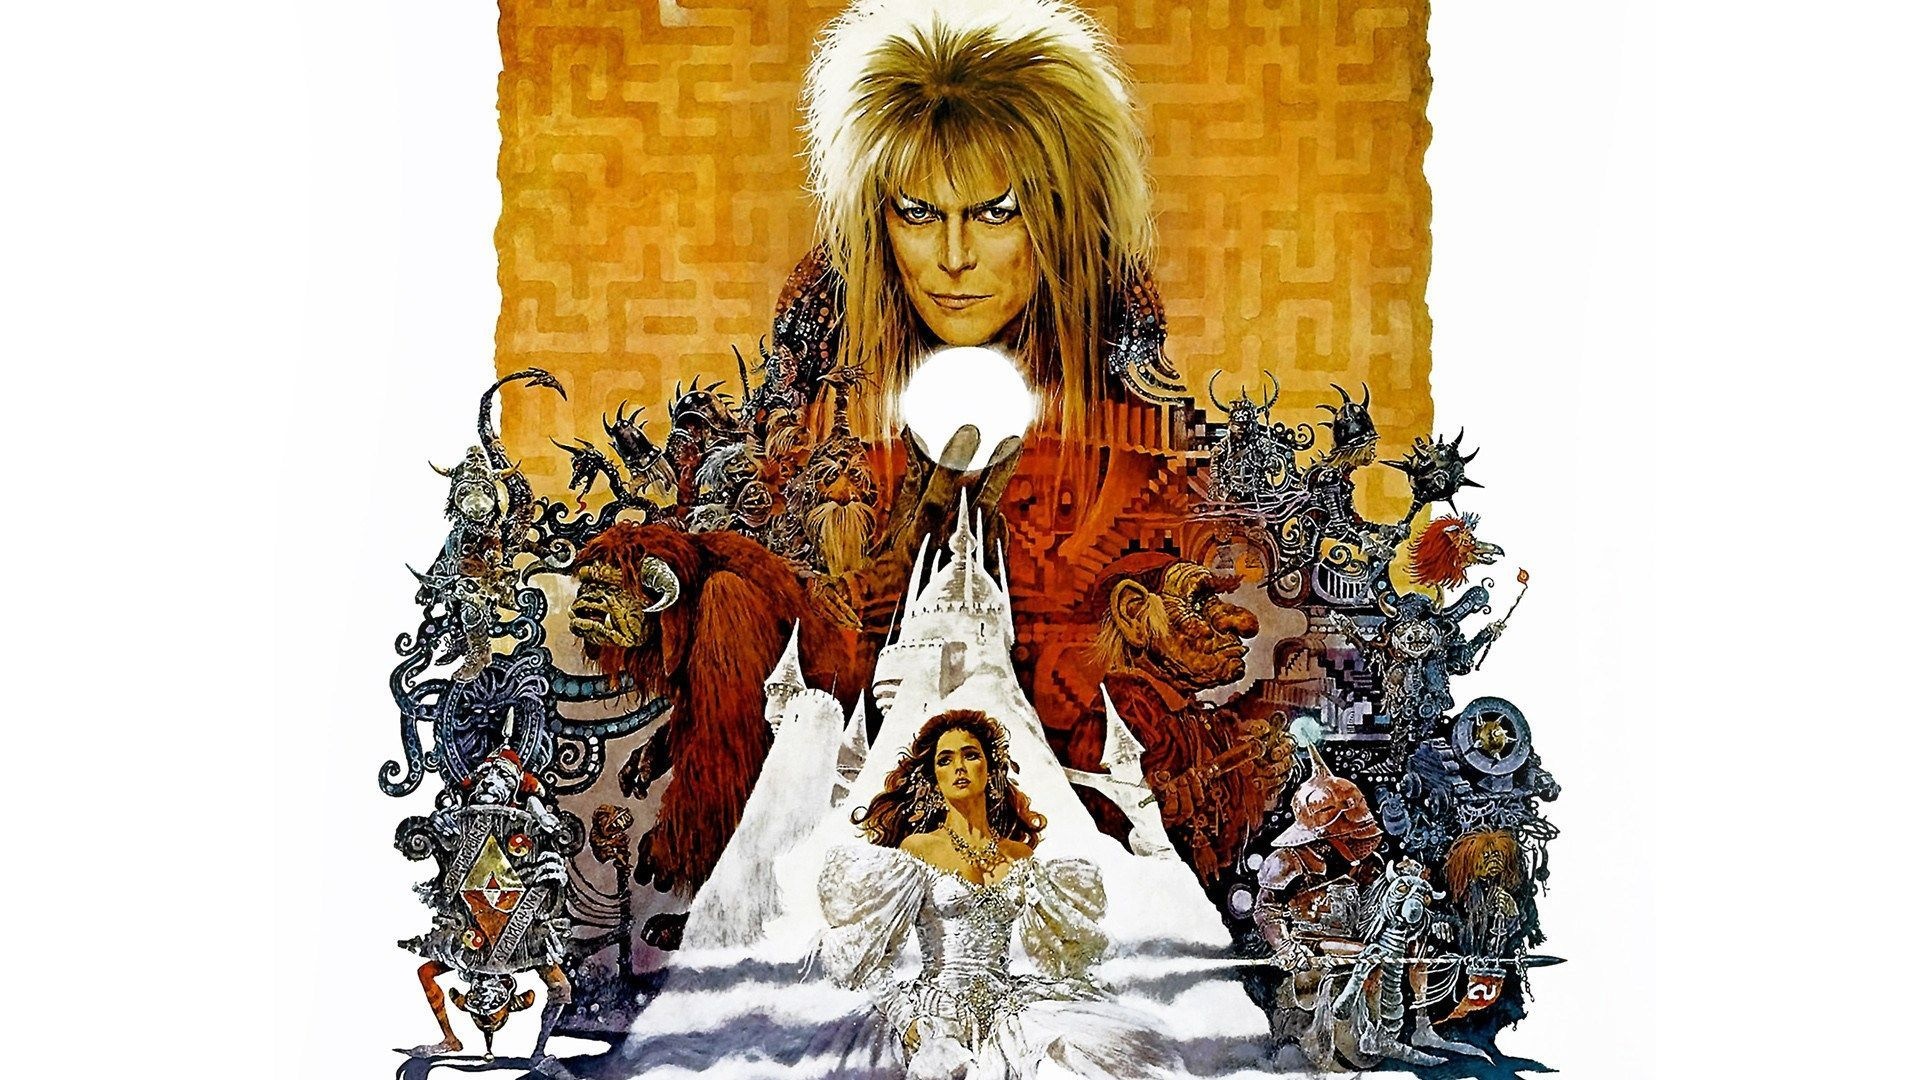 David Bowie: Portrayed Jareth in a 1986 musical fantasy film, Labyrinth. 1920x1080 Full HD Wallpaper.